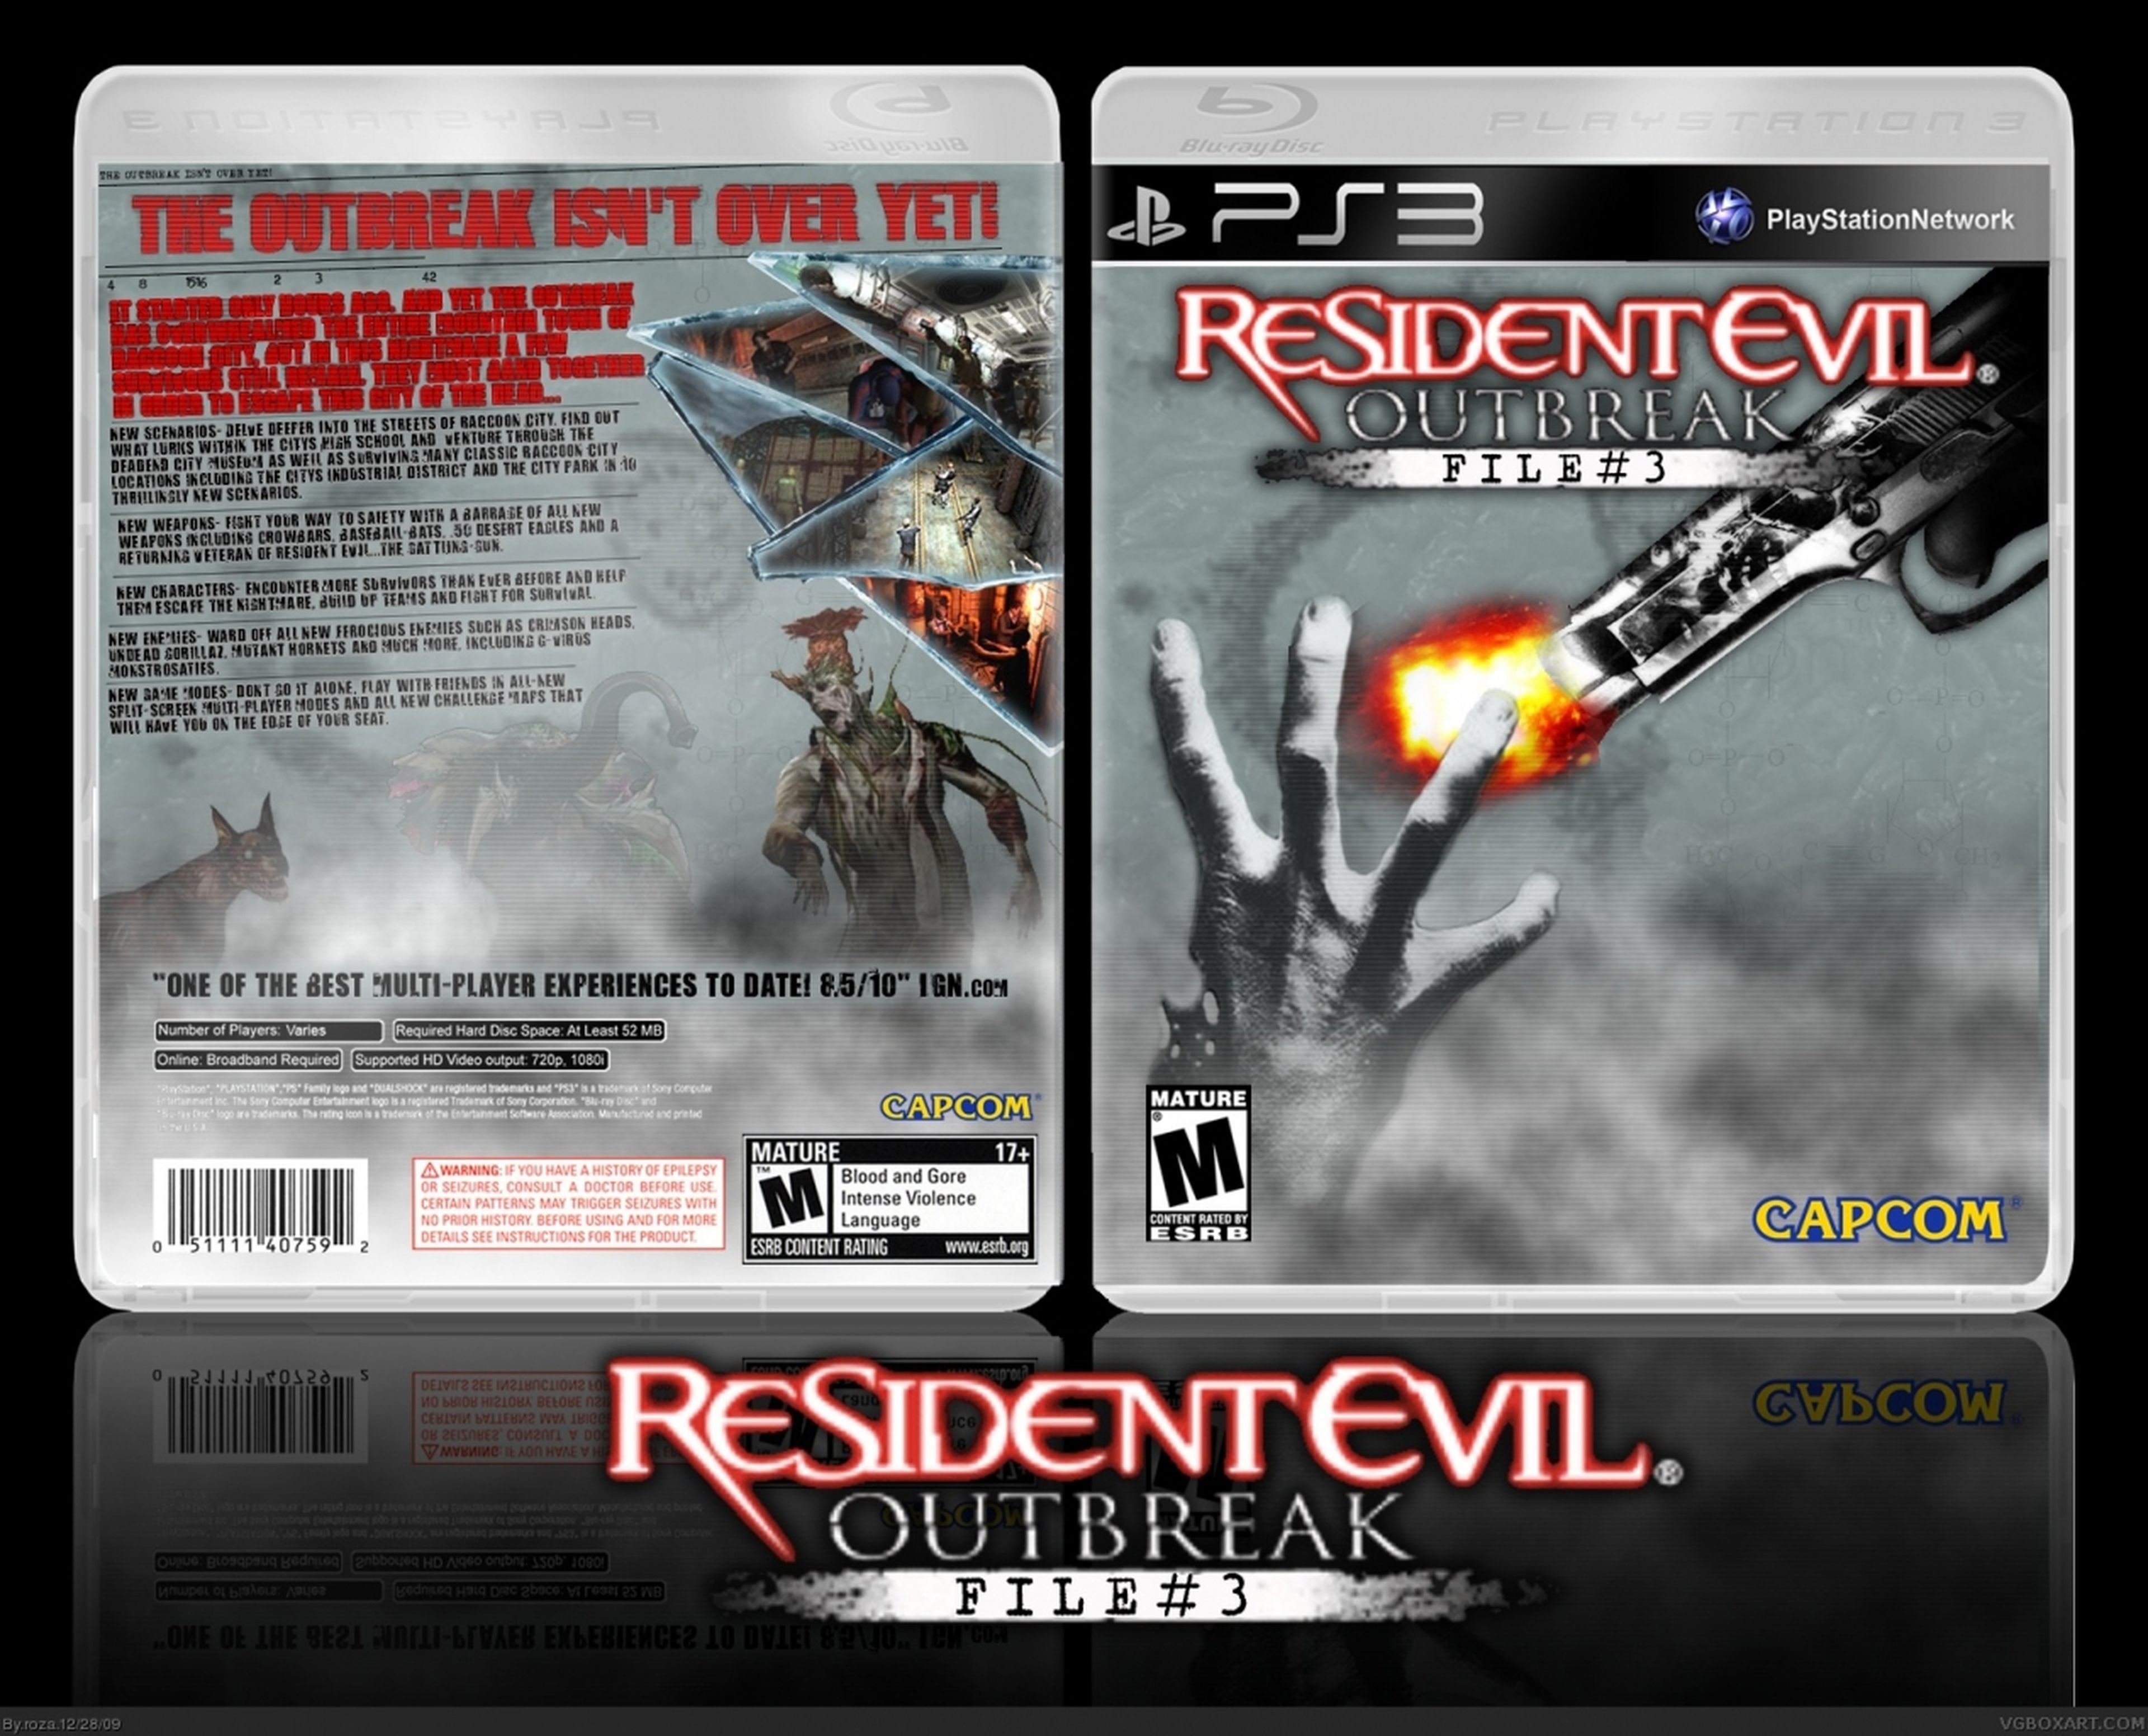 Resident Evil Outbreak File 3